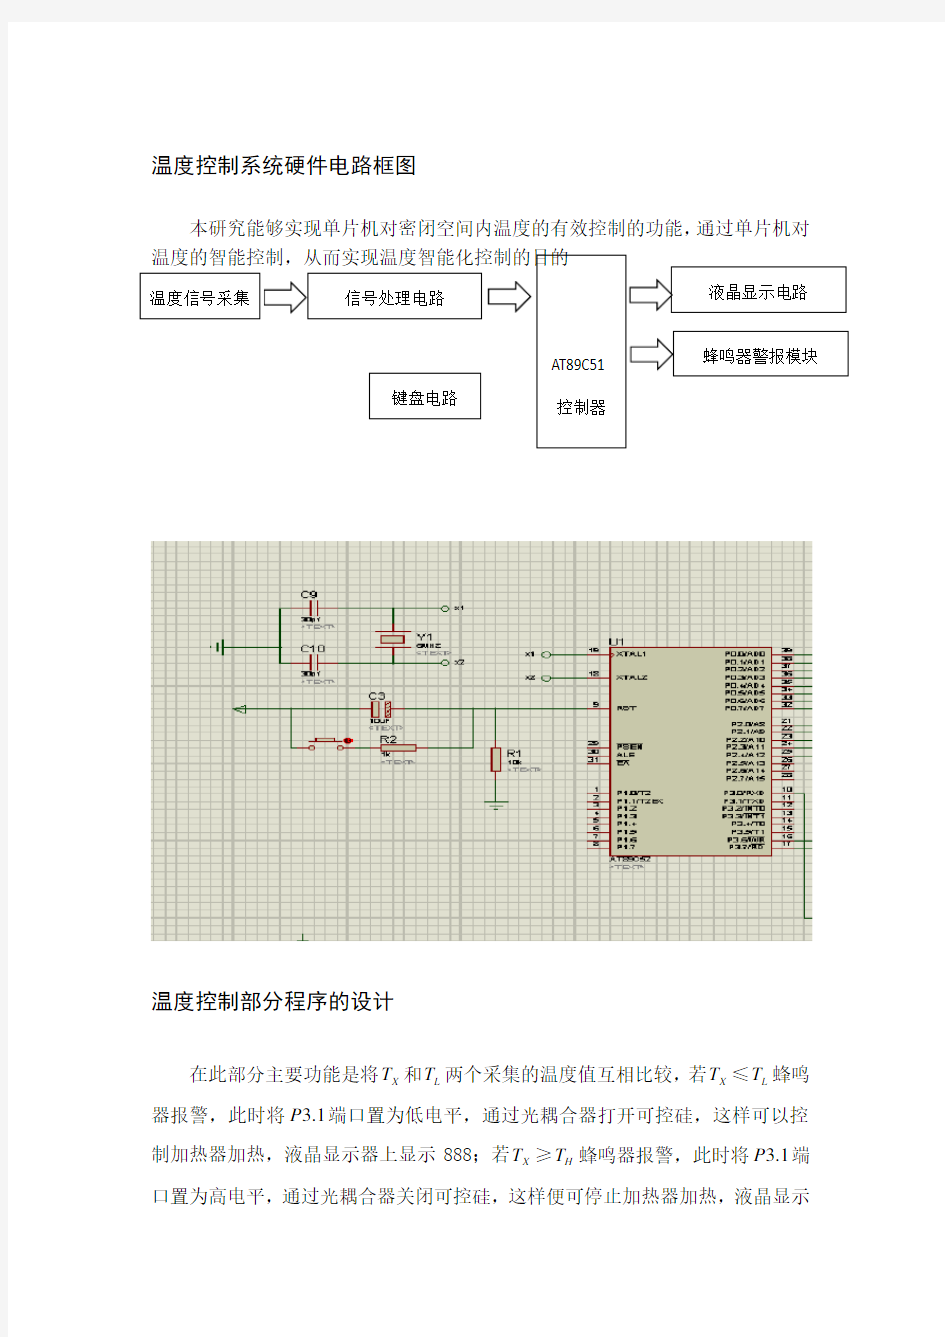 温度控制系统硬件电路框图